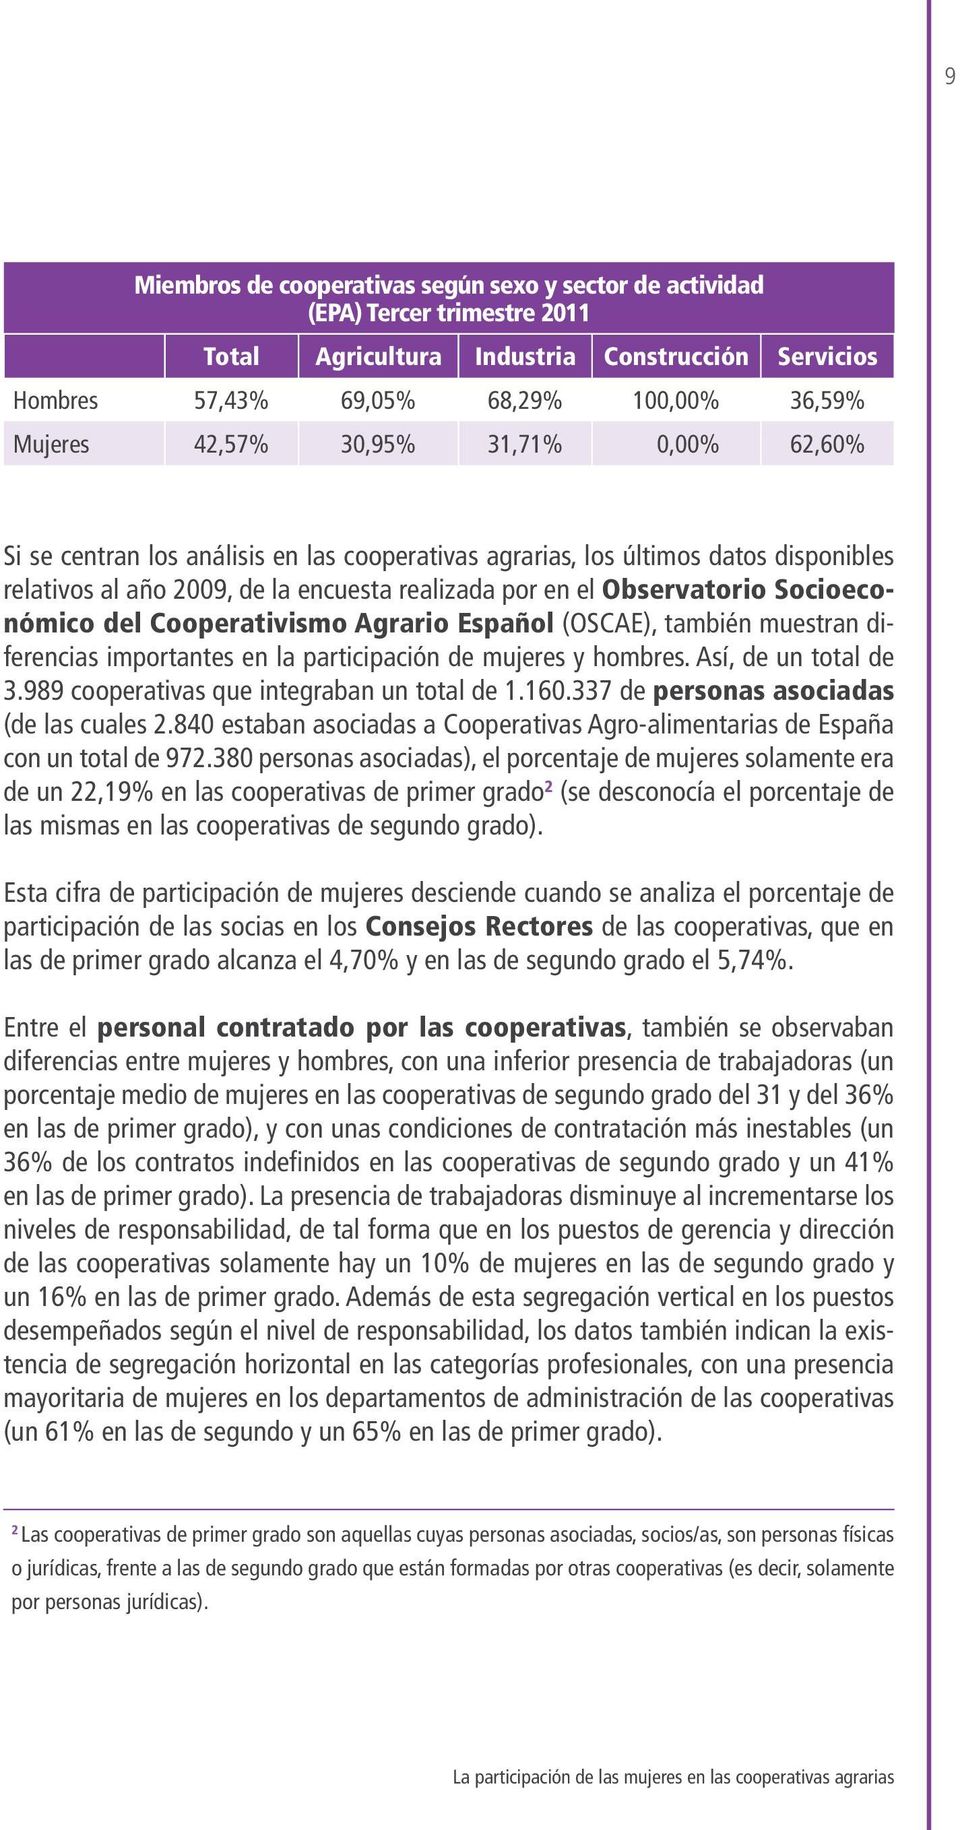 del Cooperativismo Agrario Español (OSCAE), también muestran diferencias importantes en la participación de mujeres y hombres. Así, de un total de 3.989 cooperativas que integraban un total de 1.160.